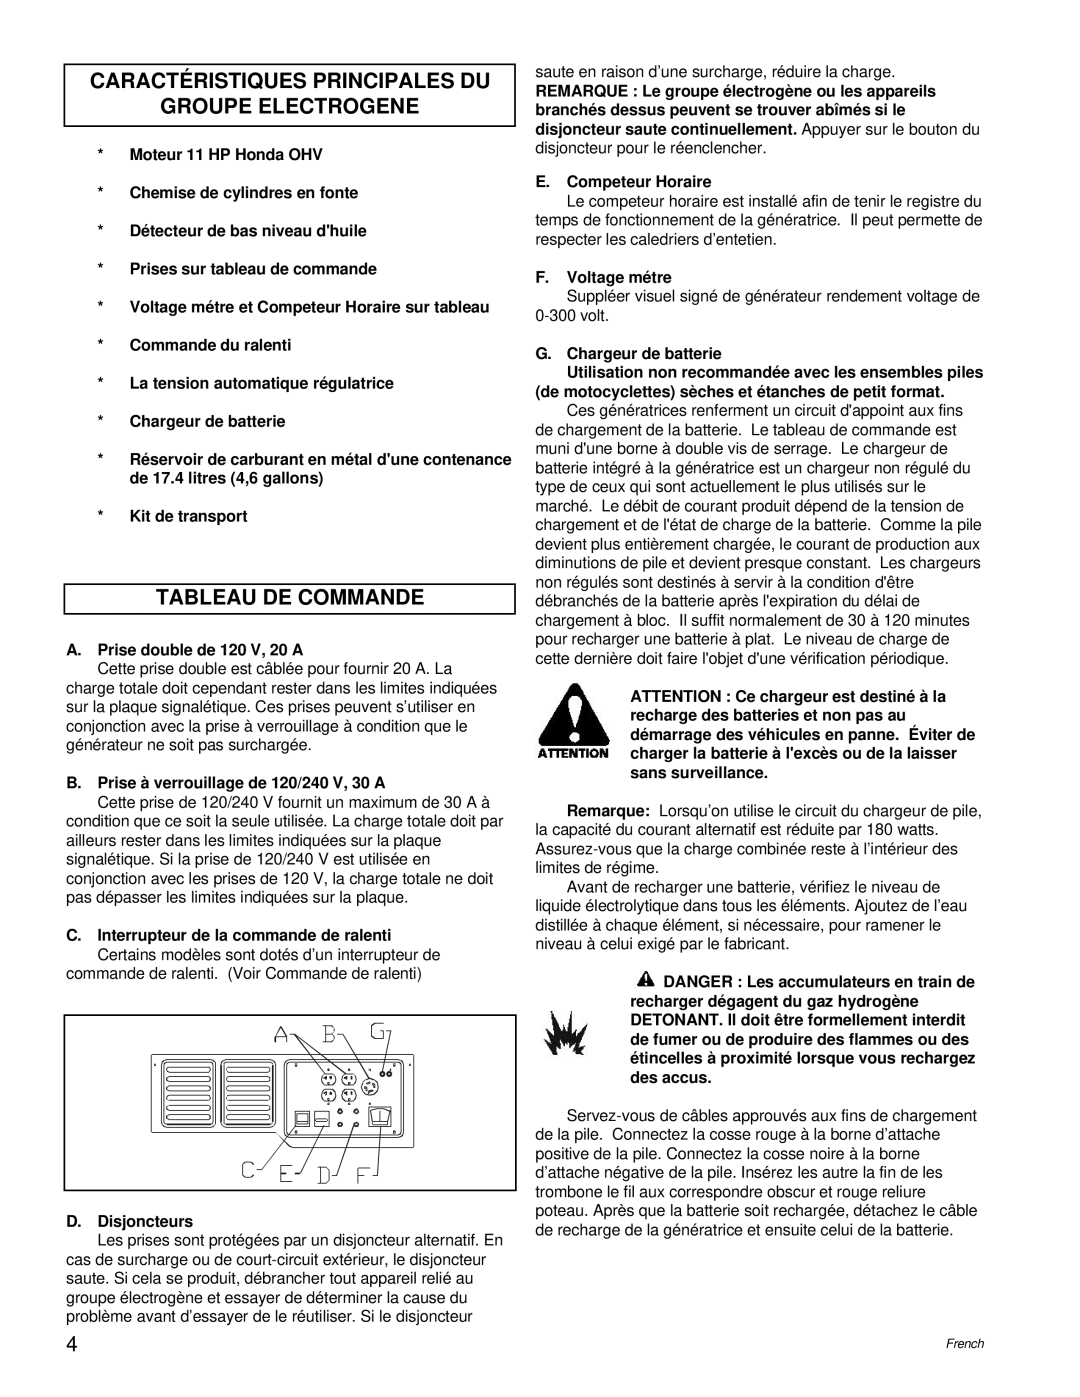 Powermate PM0495501.01 manual Caractéristiques Principales Du Groupe Electrogene, Tableau De Commande 